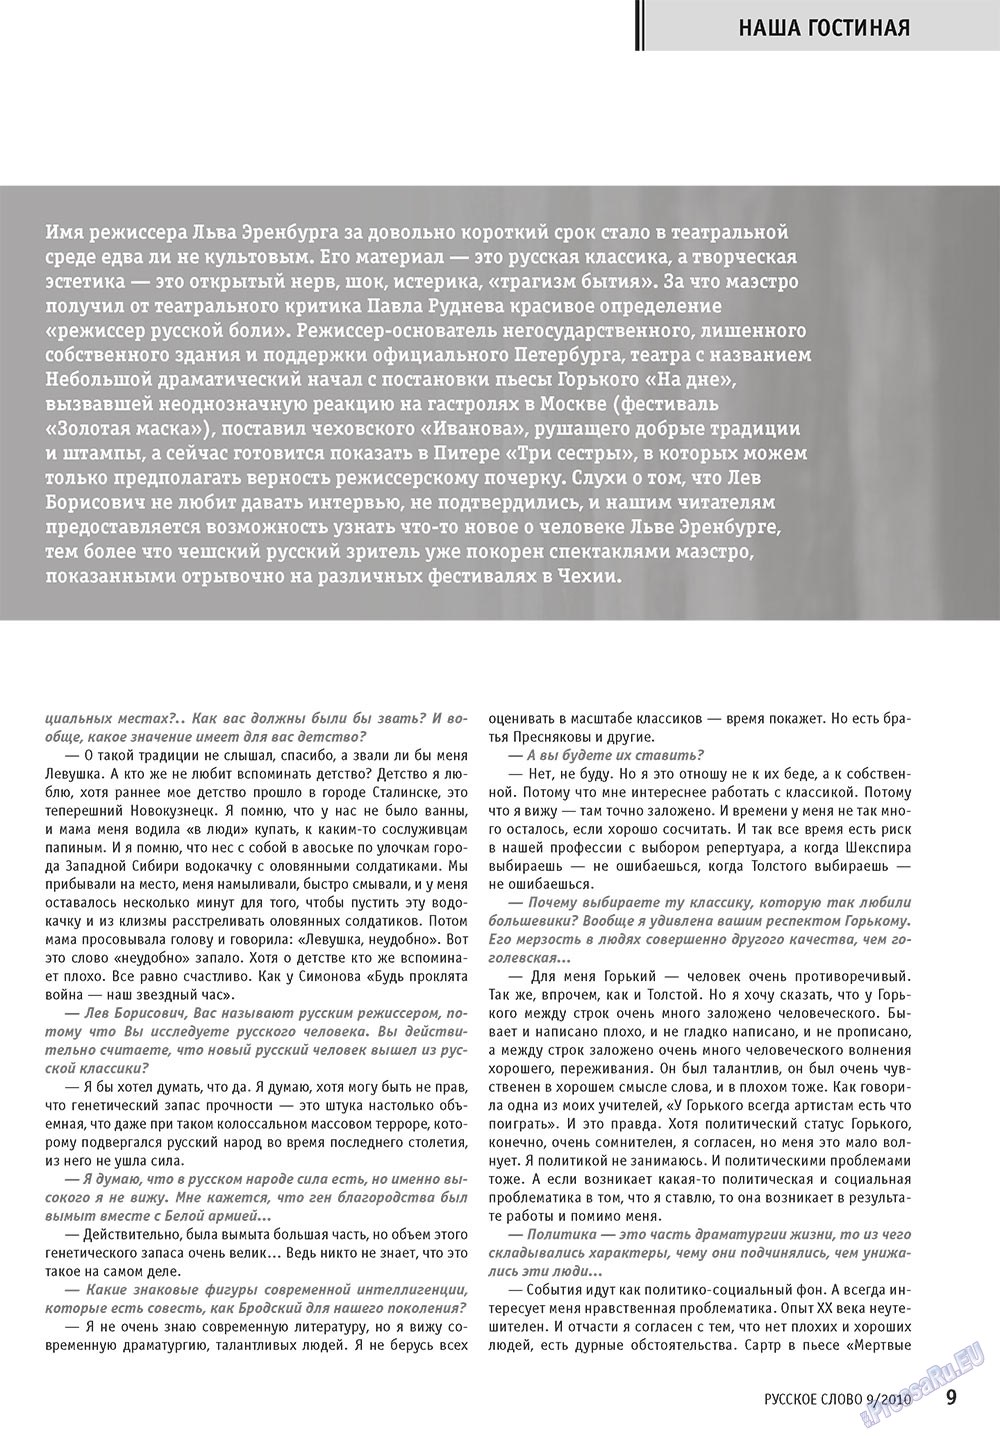 Русское слово (журнал). 2010 год, номер 9, стр. 11